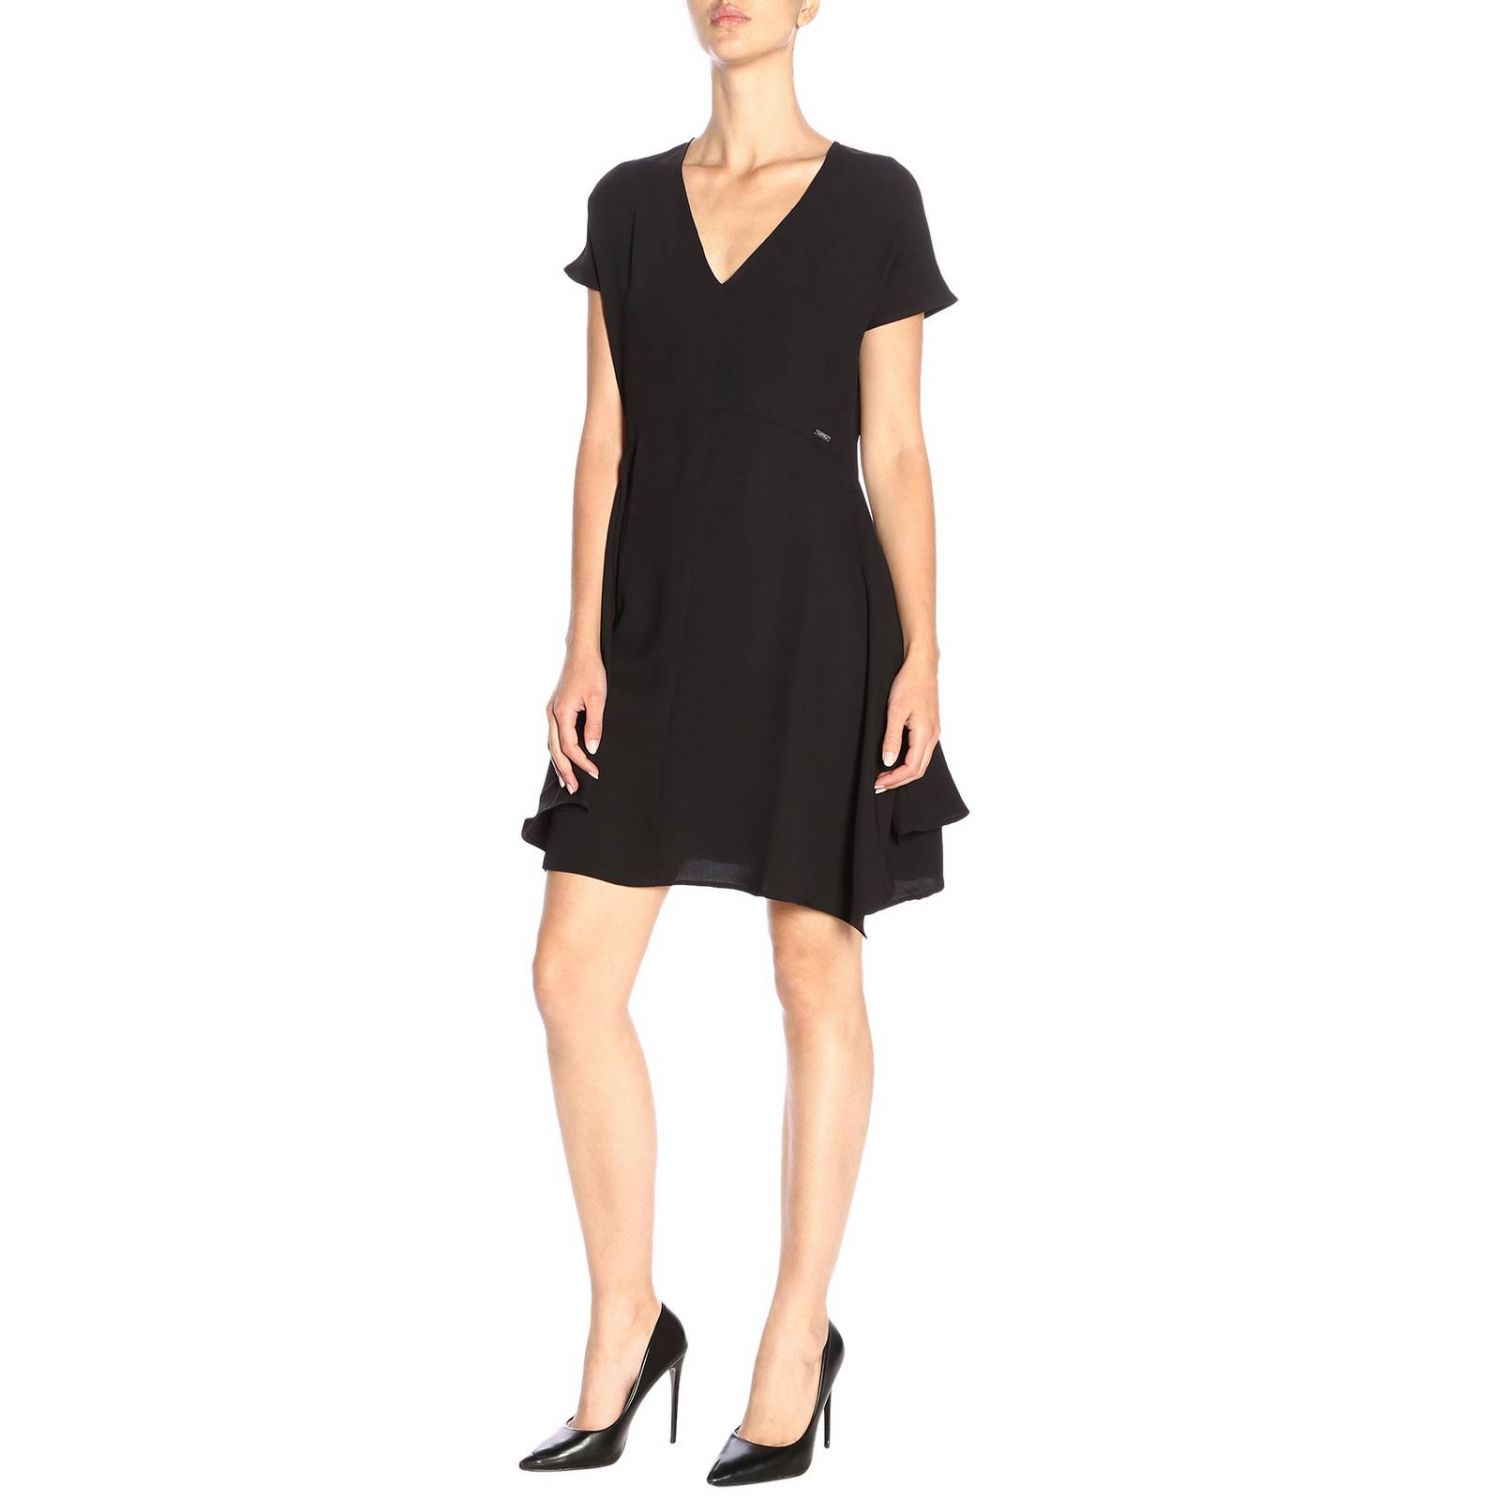 Armani Exchange Outlet: Dress women - Black | Dress Armani Exchange ...